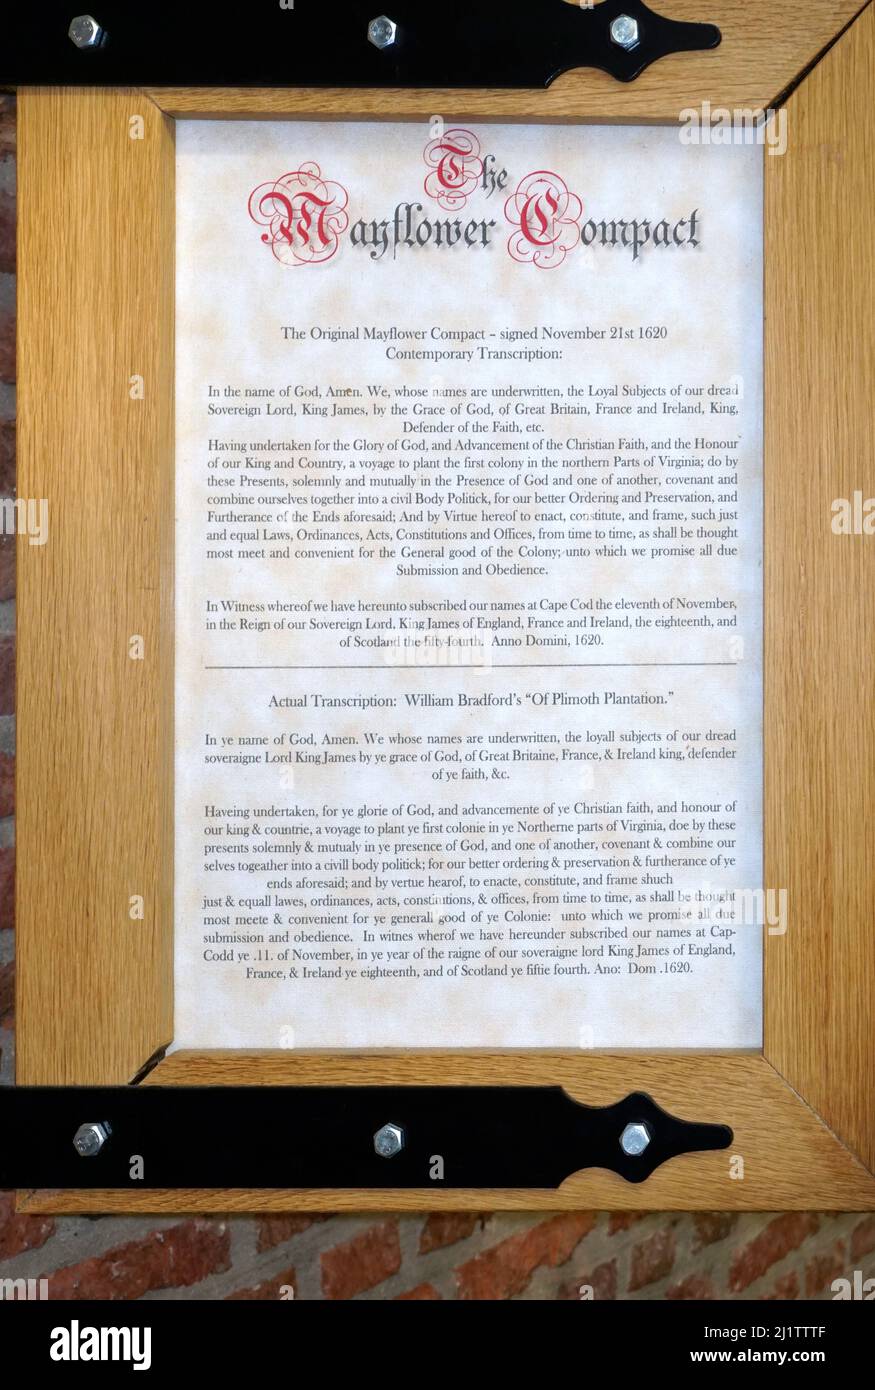 Der Mayflower Compact, Abkommen zwischen den Siedlern von New Plymouth. Das erste Regierungsdokument der Plymouth Colony. Geschrieben von den männlichen Passagieren der Mayflower, bestehend aus separatistischen Puritanern, Abenteurern und Handwerkern, die vor religiöser Verfolgung durch König James I. von England fliehen. Unterzeichnet an Bord des Schiffes am 21,1620. November. Stockfoto